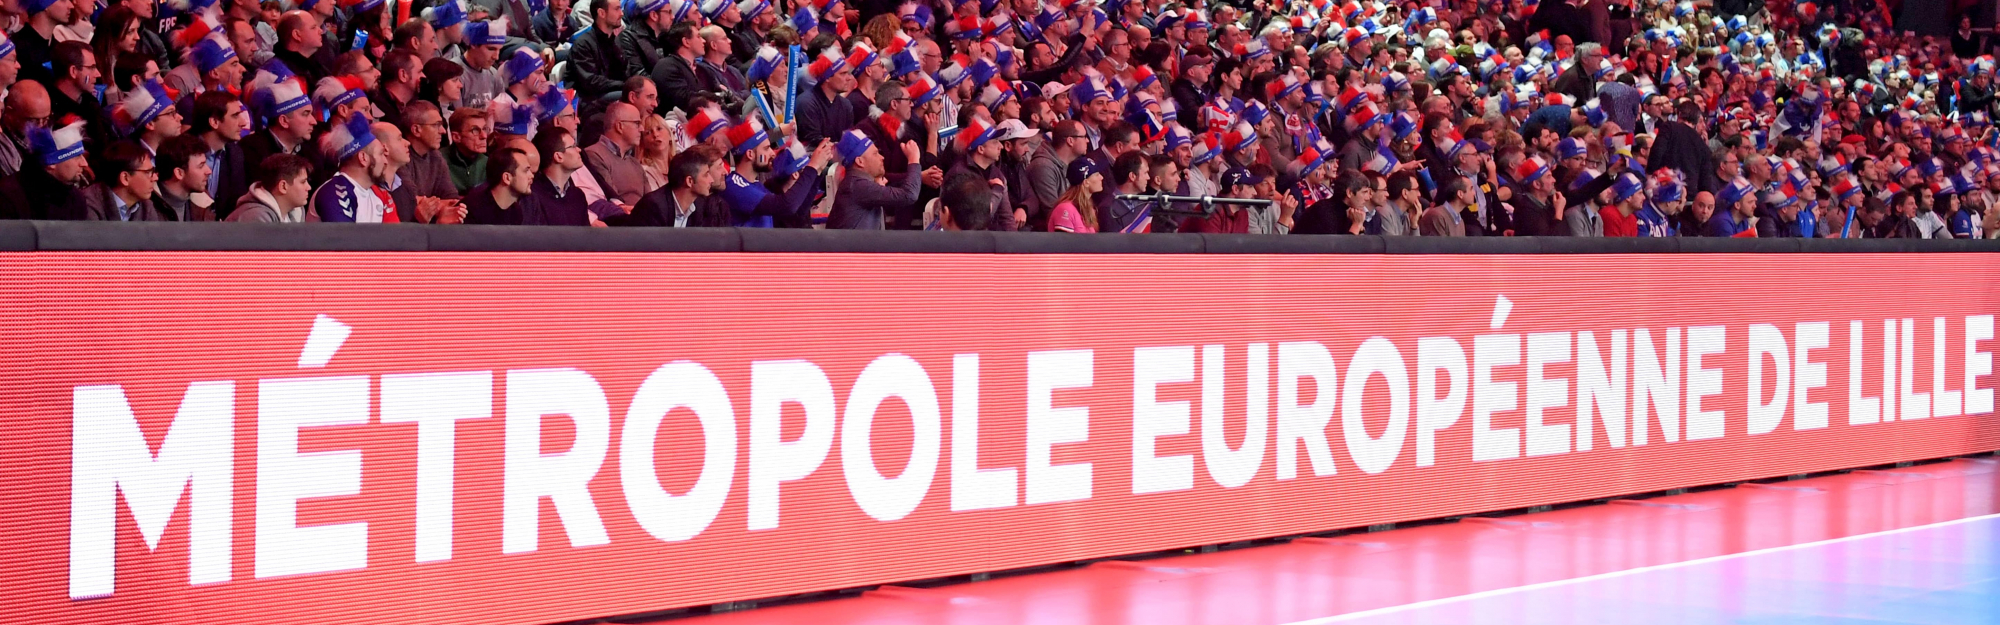 Paris 2024 : la Métropole Européenne de Lille accueillera les tournois olympiques de handball féminin et masculin